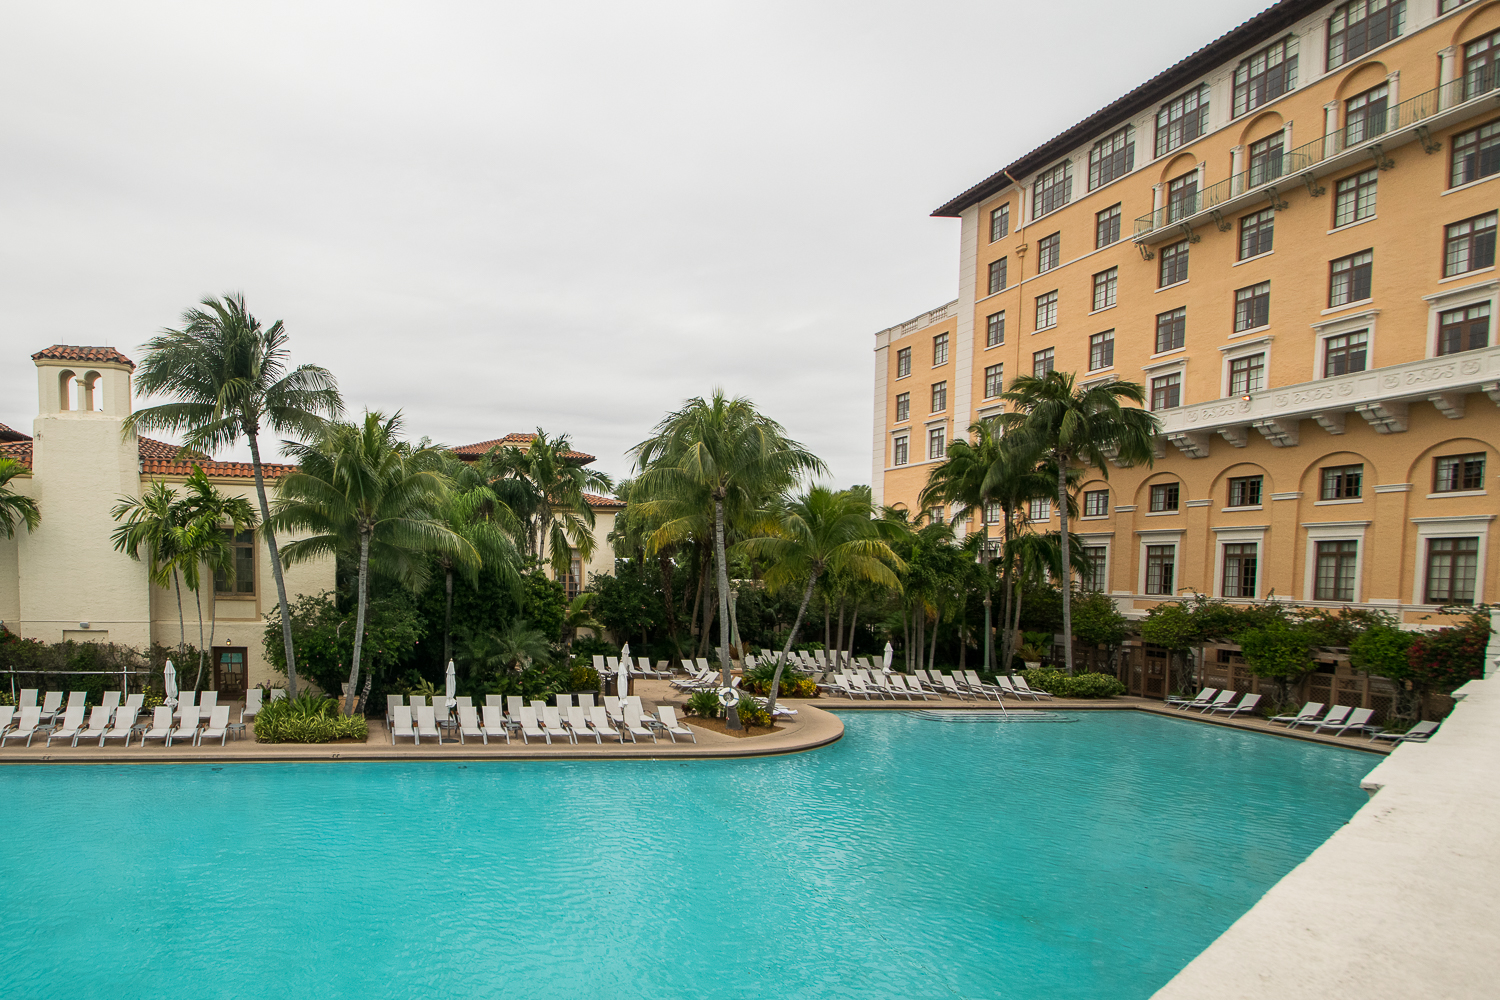 Biltmore Hotel, Miami